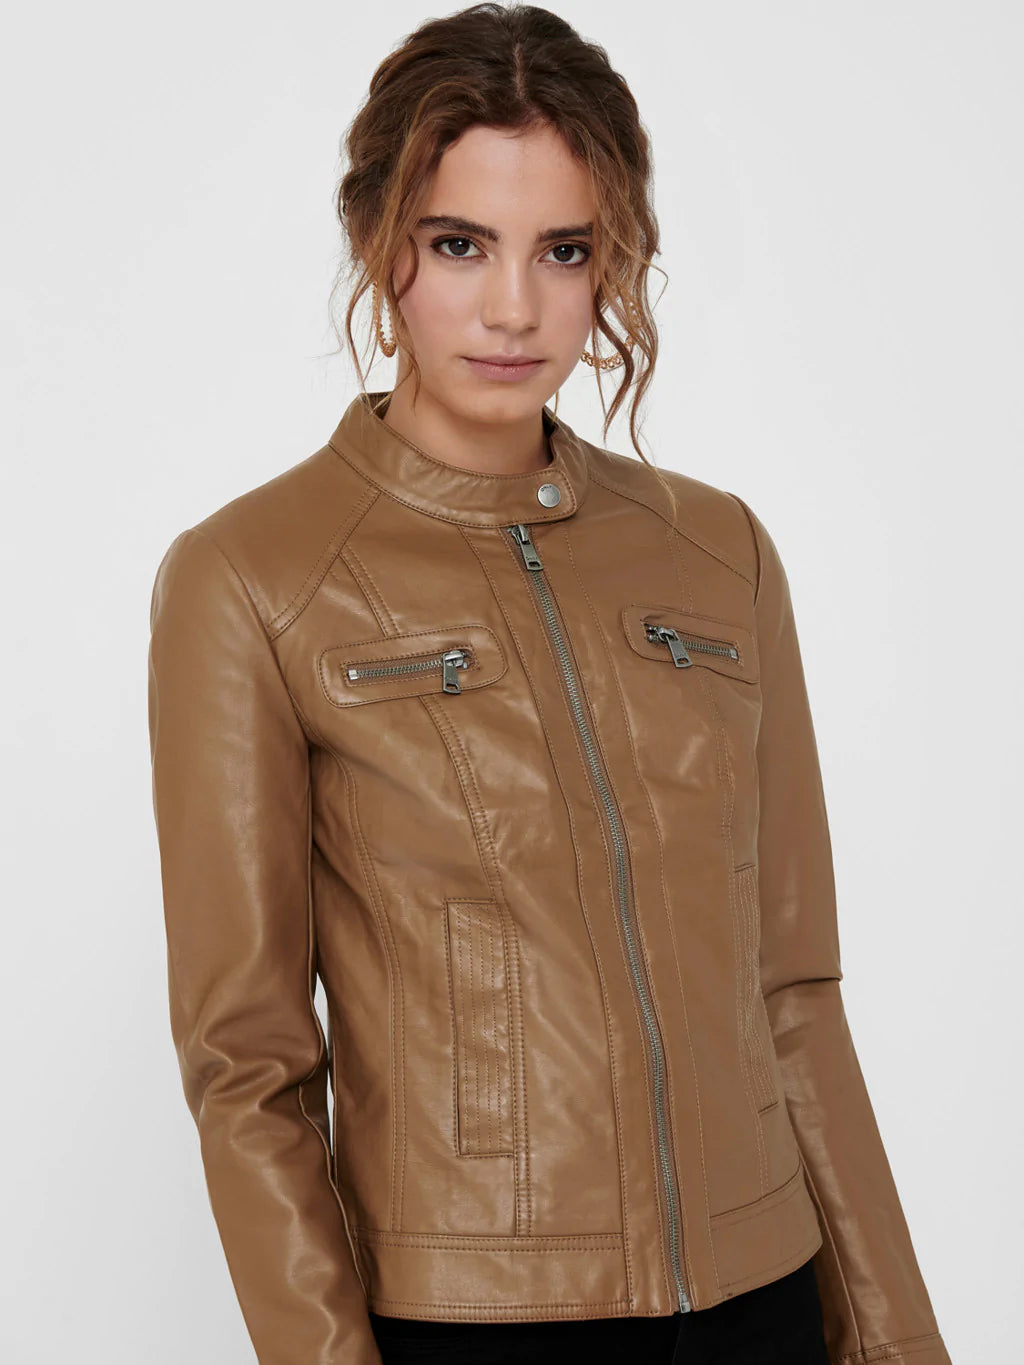 Jacket brun effet cuir ONLY pour femme